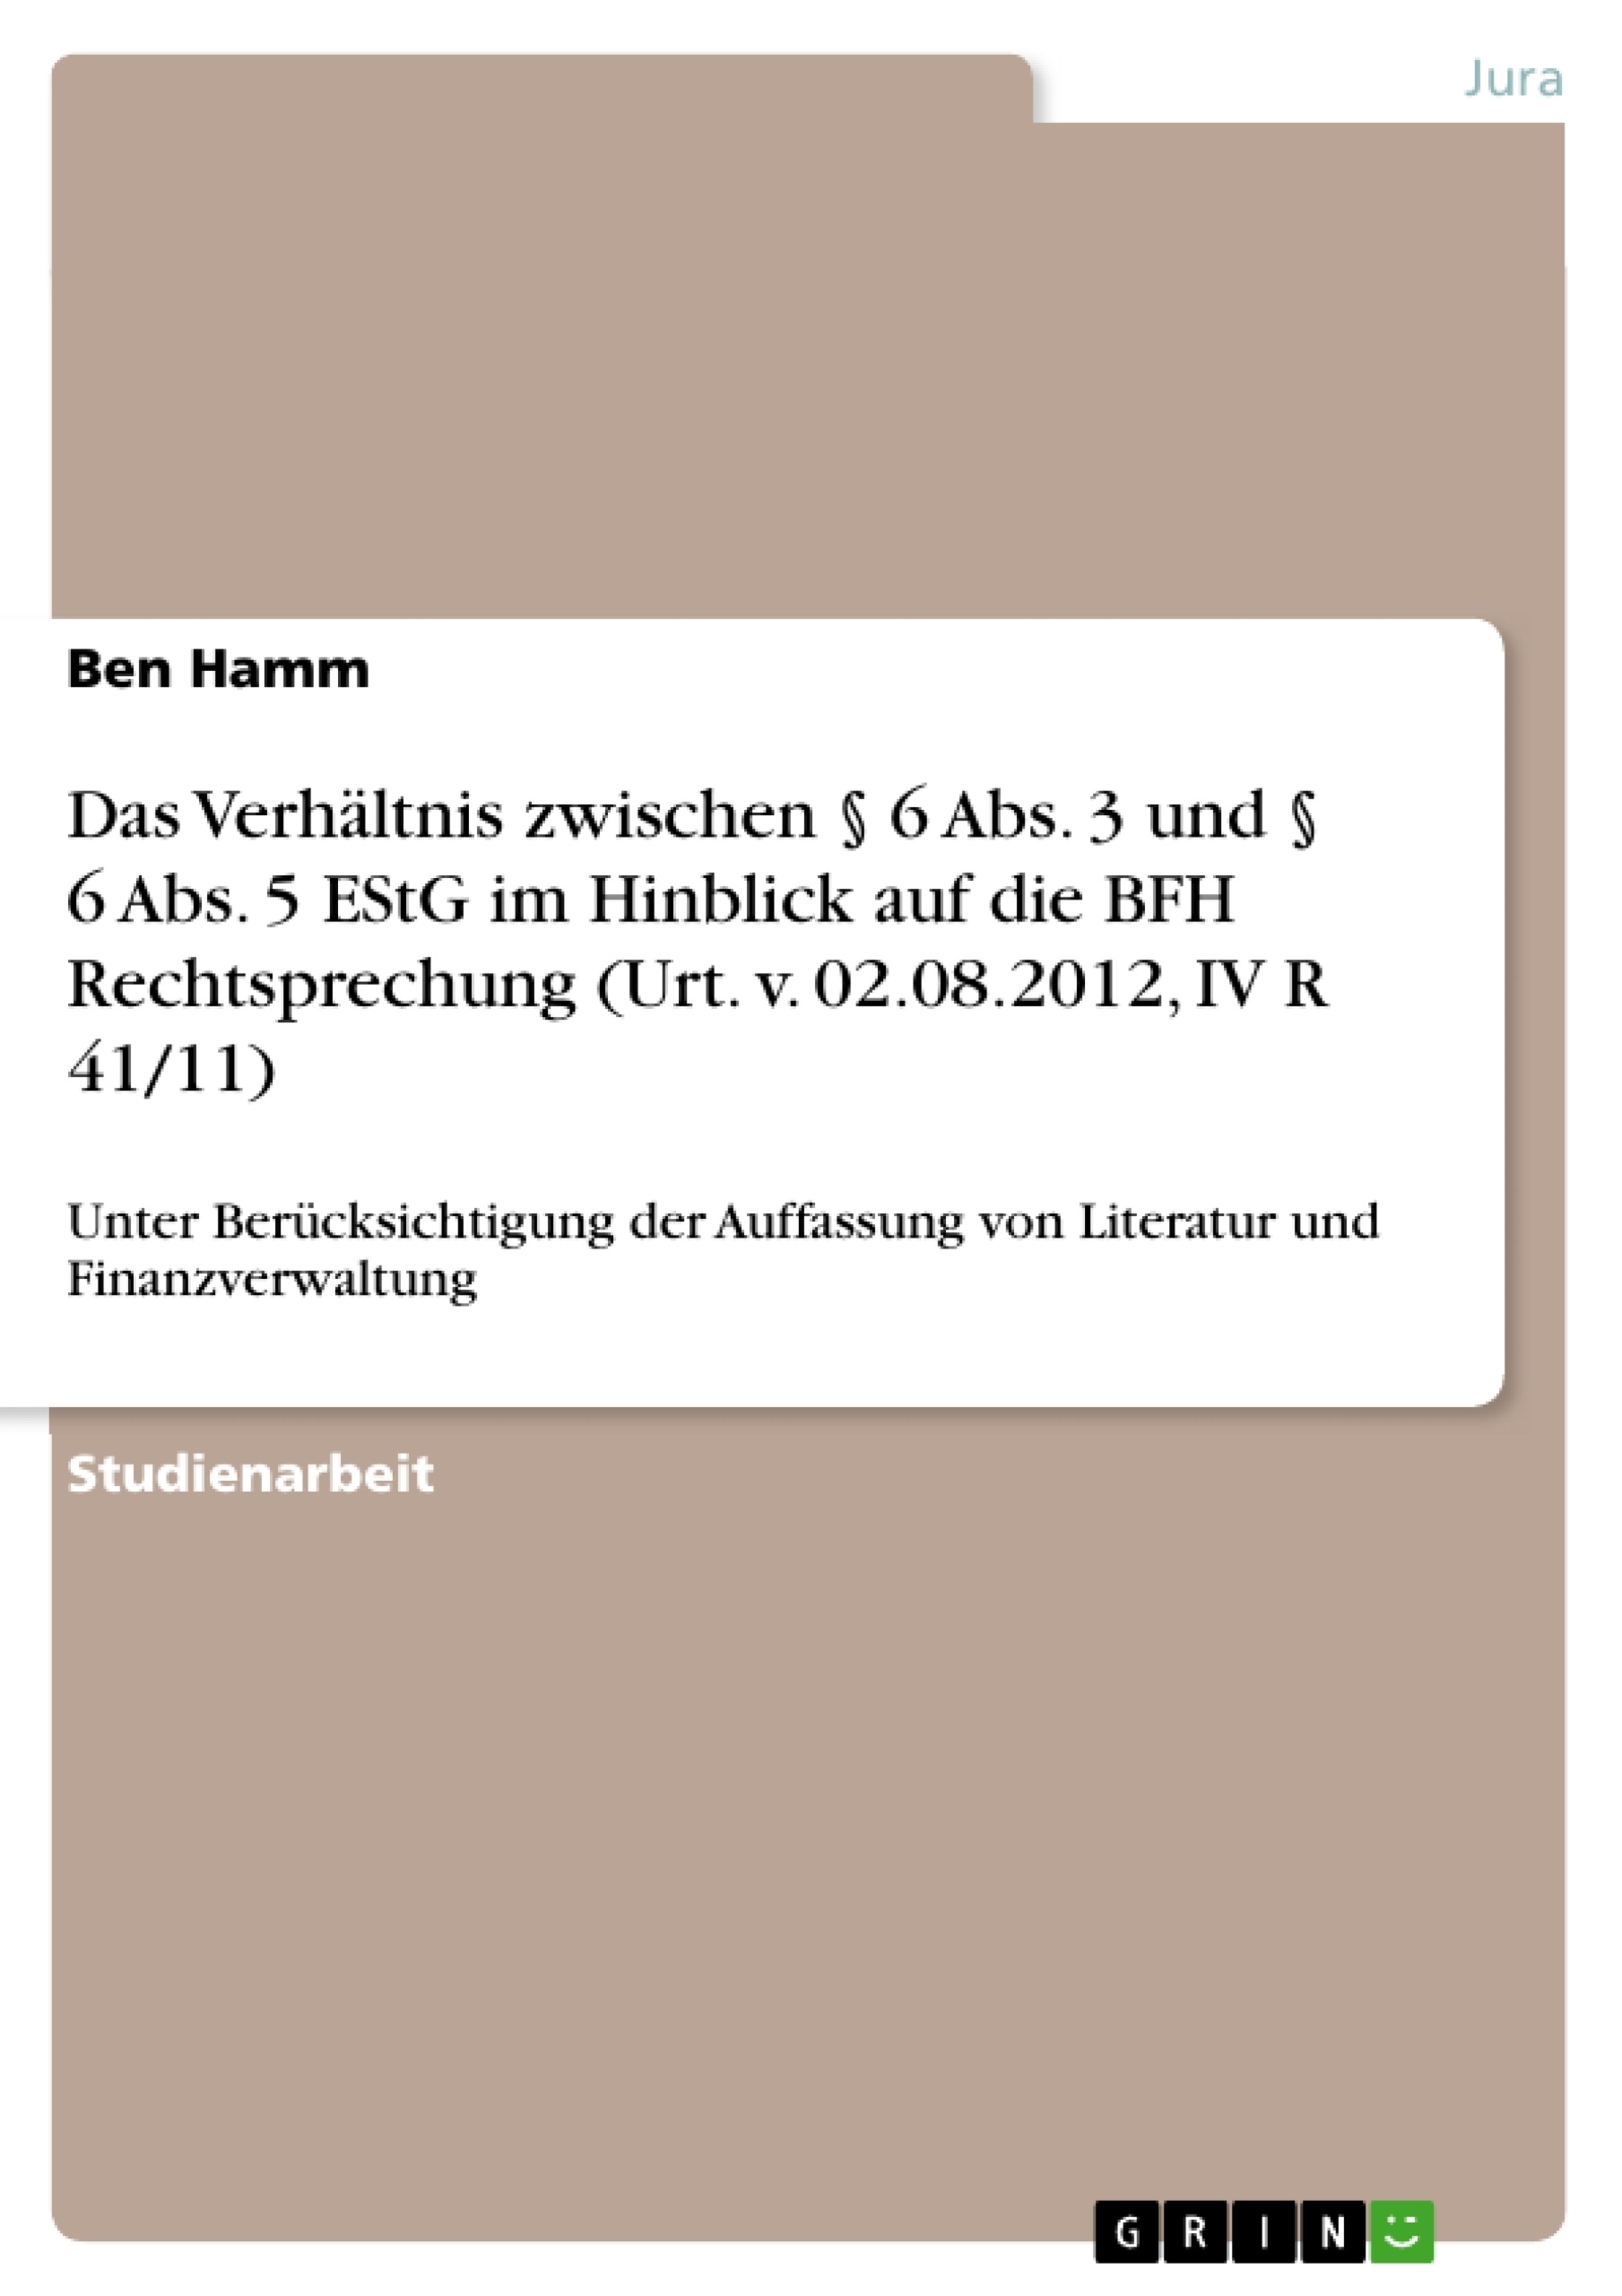 Title: Das Verhältnis zwischen § 6 Abs. 3 und § 6 Abs. 5 EStG im Hinblick auf die BFH Rechtsprechung (Urt. v. 02.08.2012, IV R 41/11)